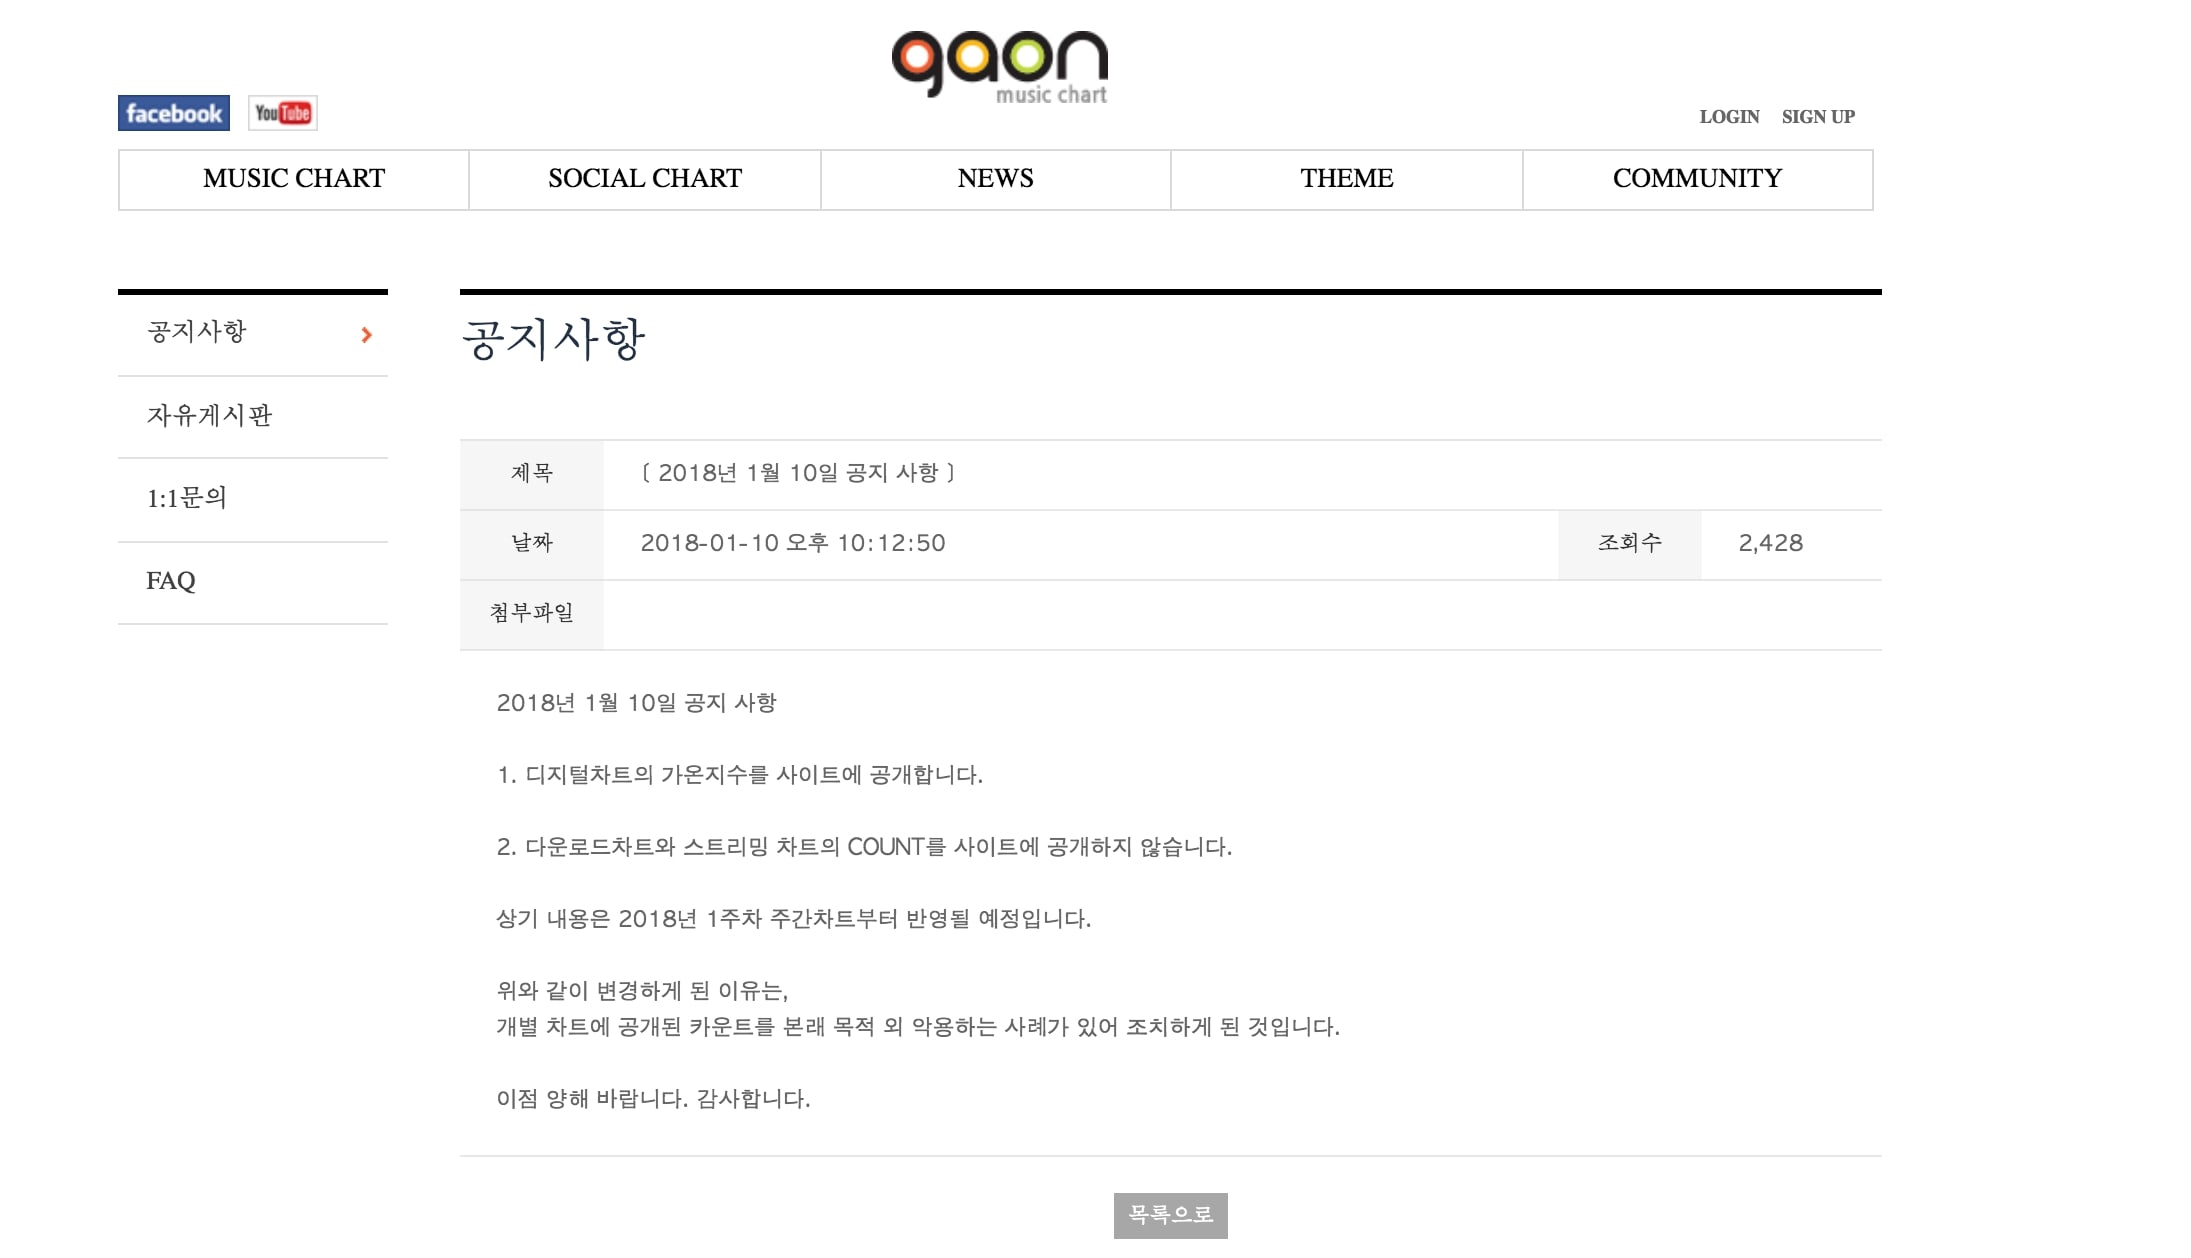 Изменения в отображении данных на сайте Gaon в 2018 году